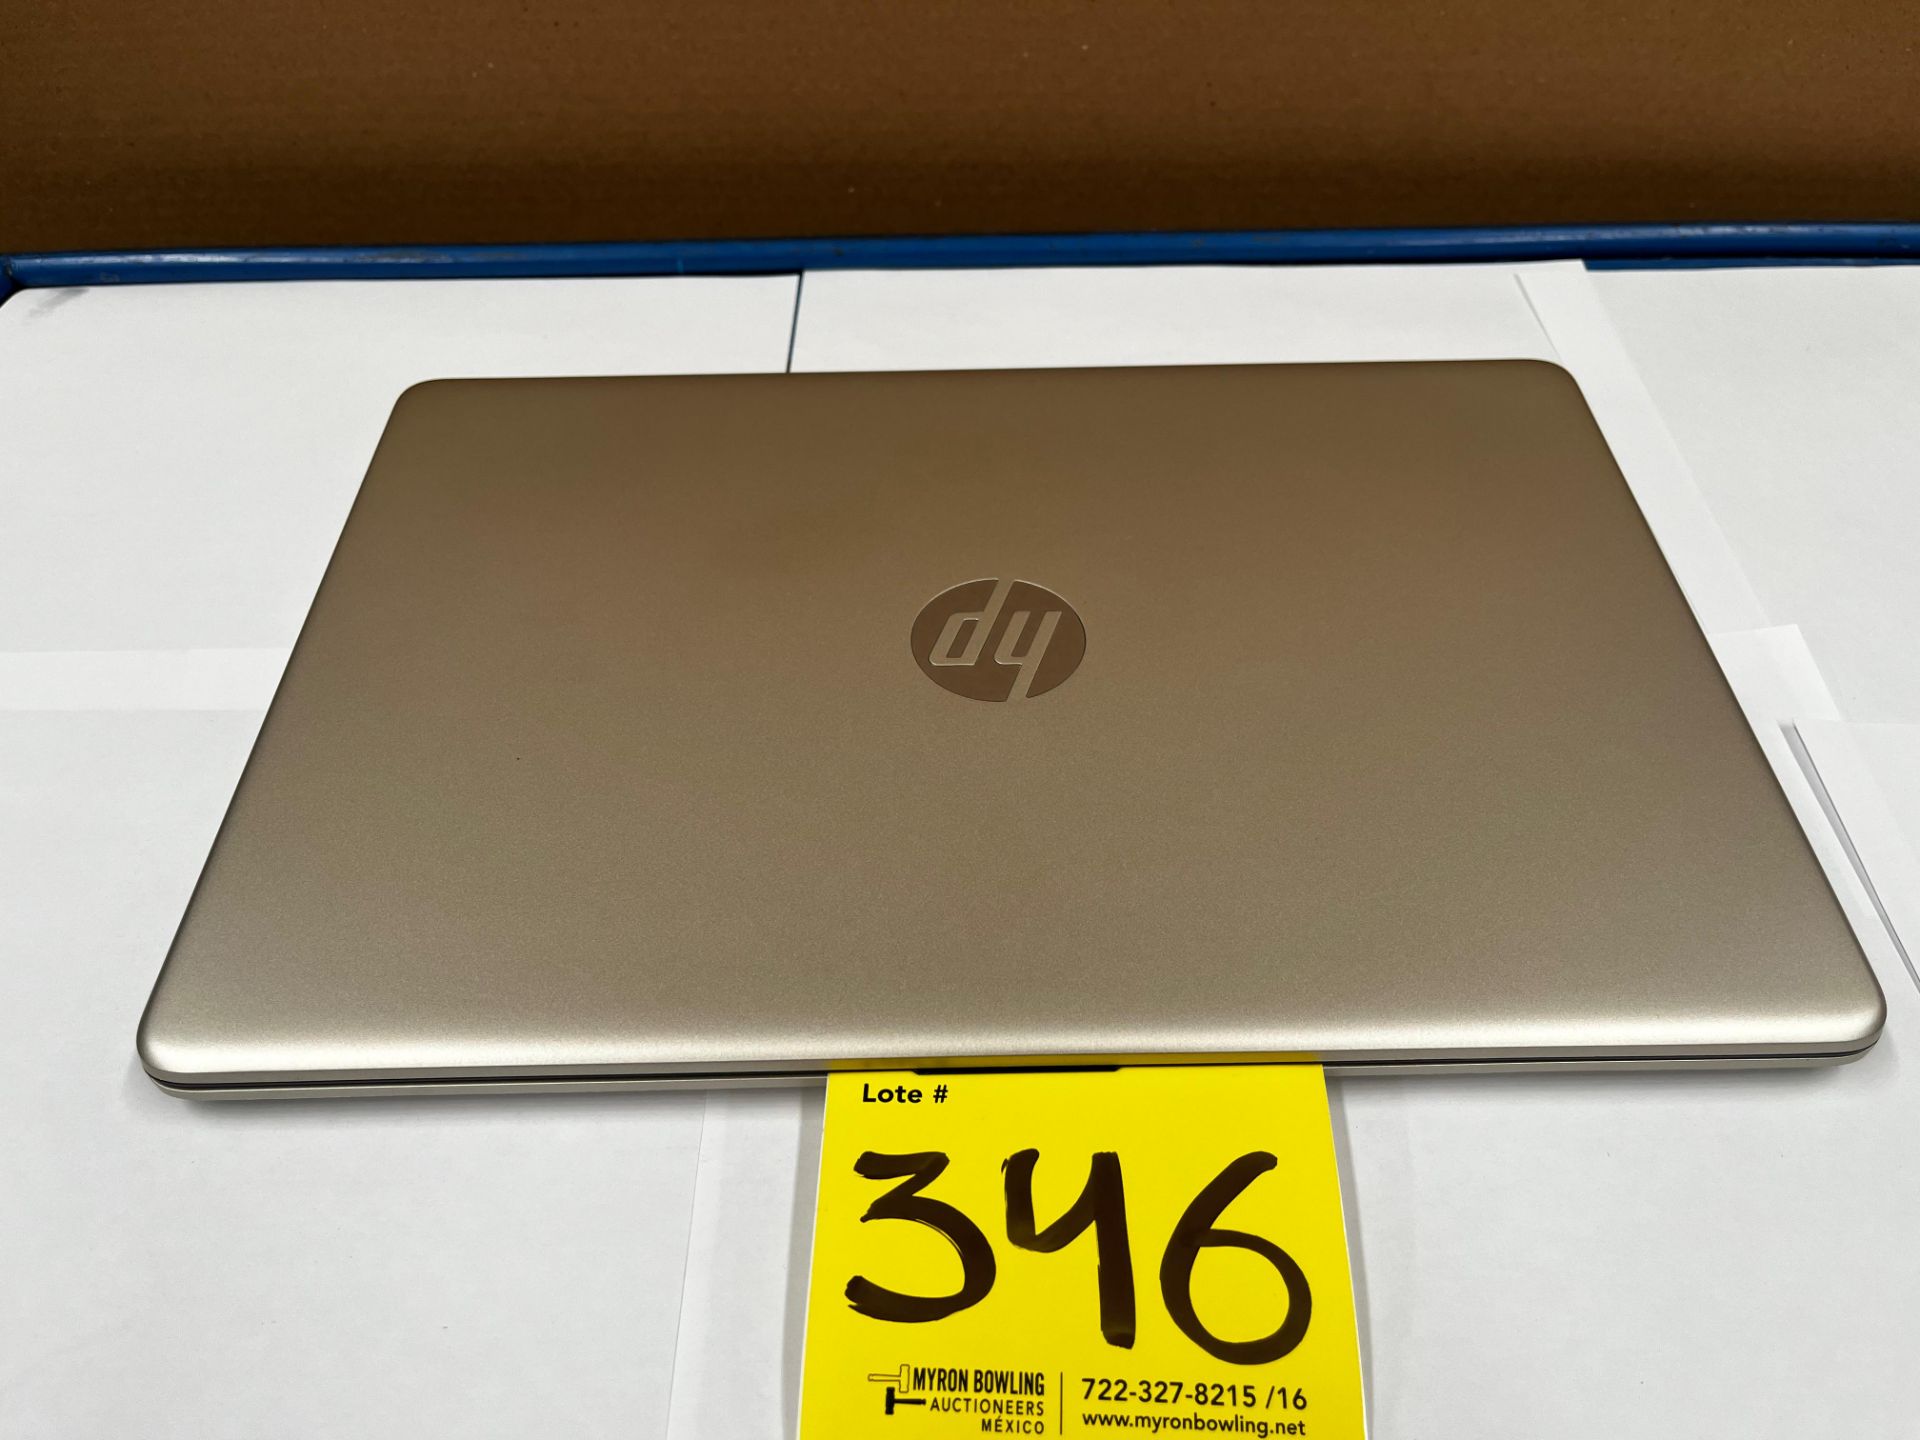 1 Laptop Marca HP, Modelo 15EF2505LA, Serie 5CD3519S94, Almacenamiento de 512 GB; RAM de 8 GB, Col - Image 3 of 6